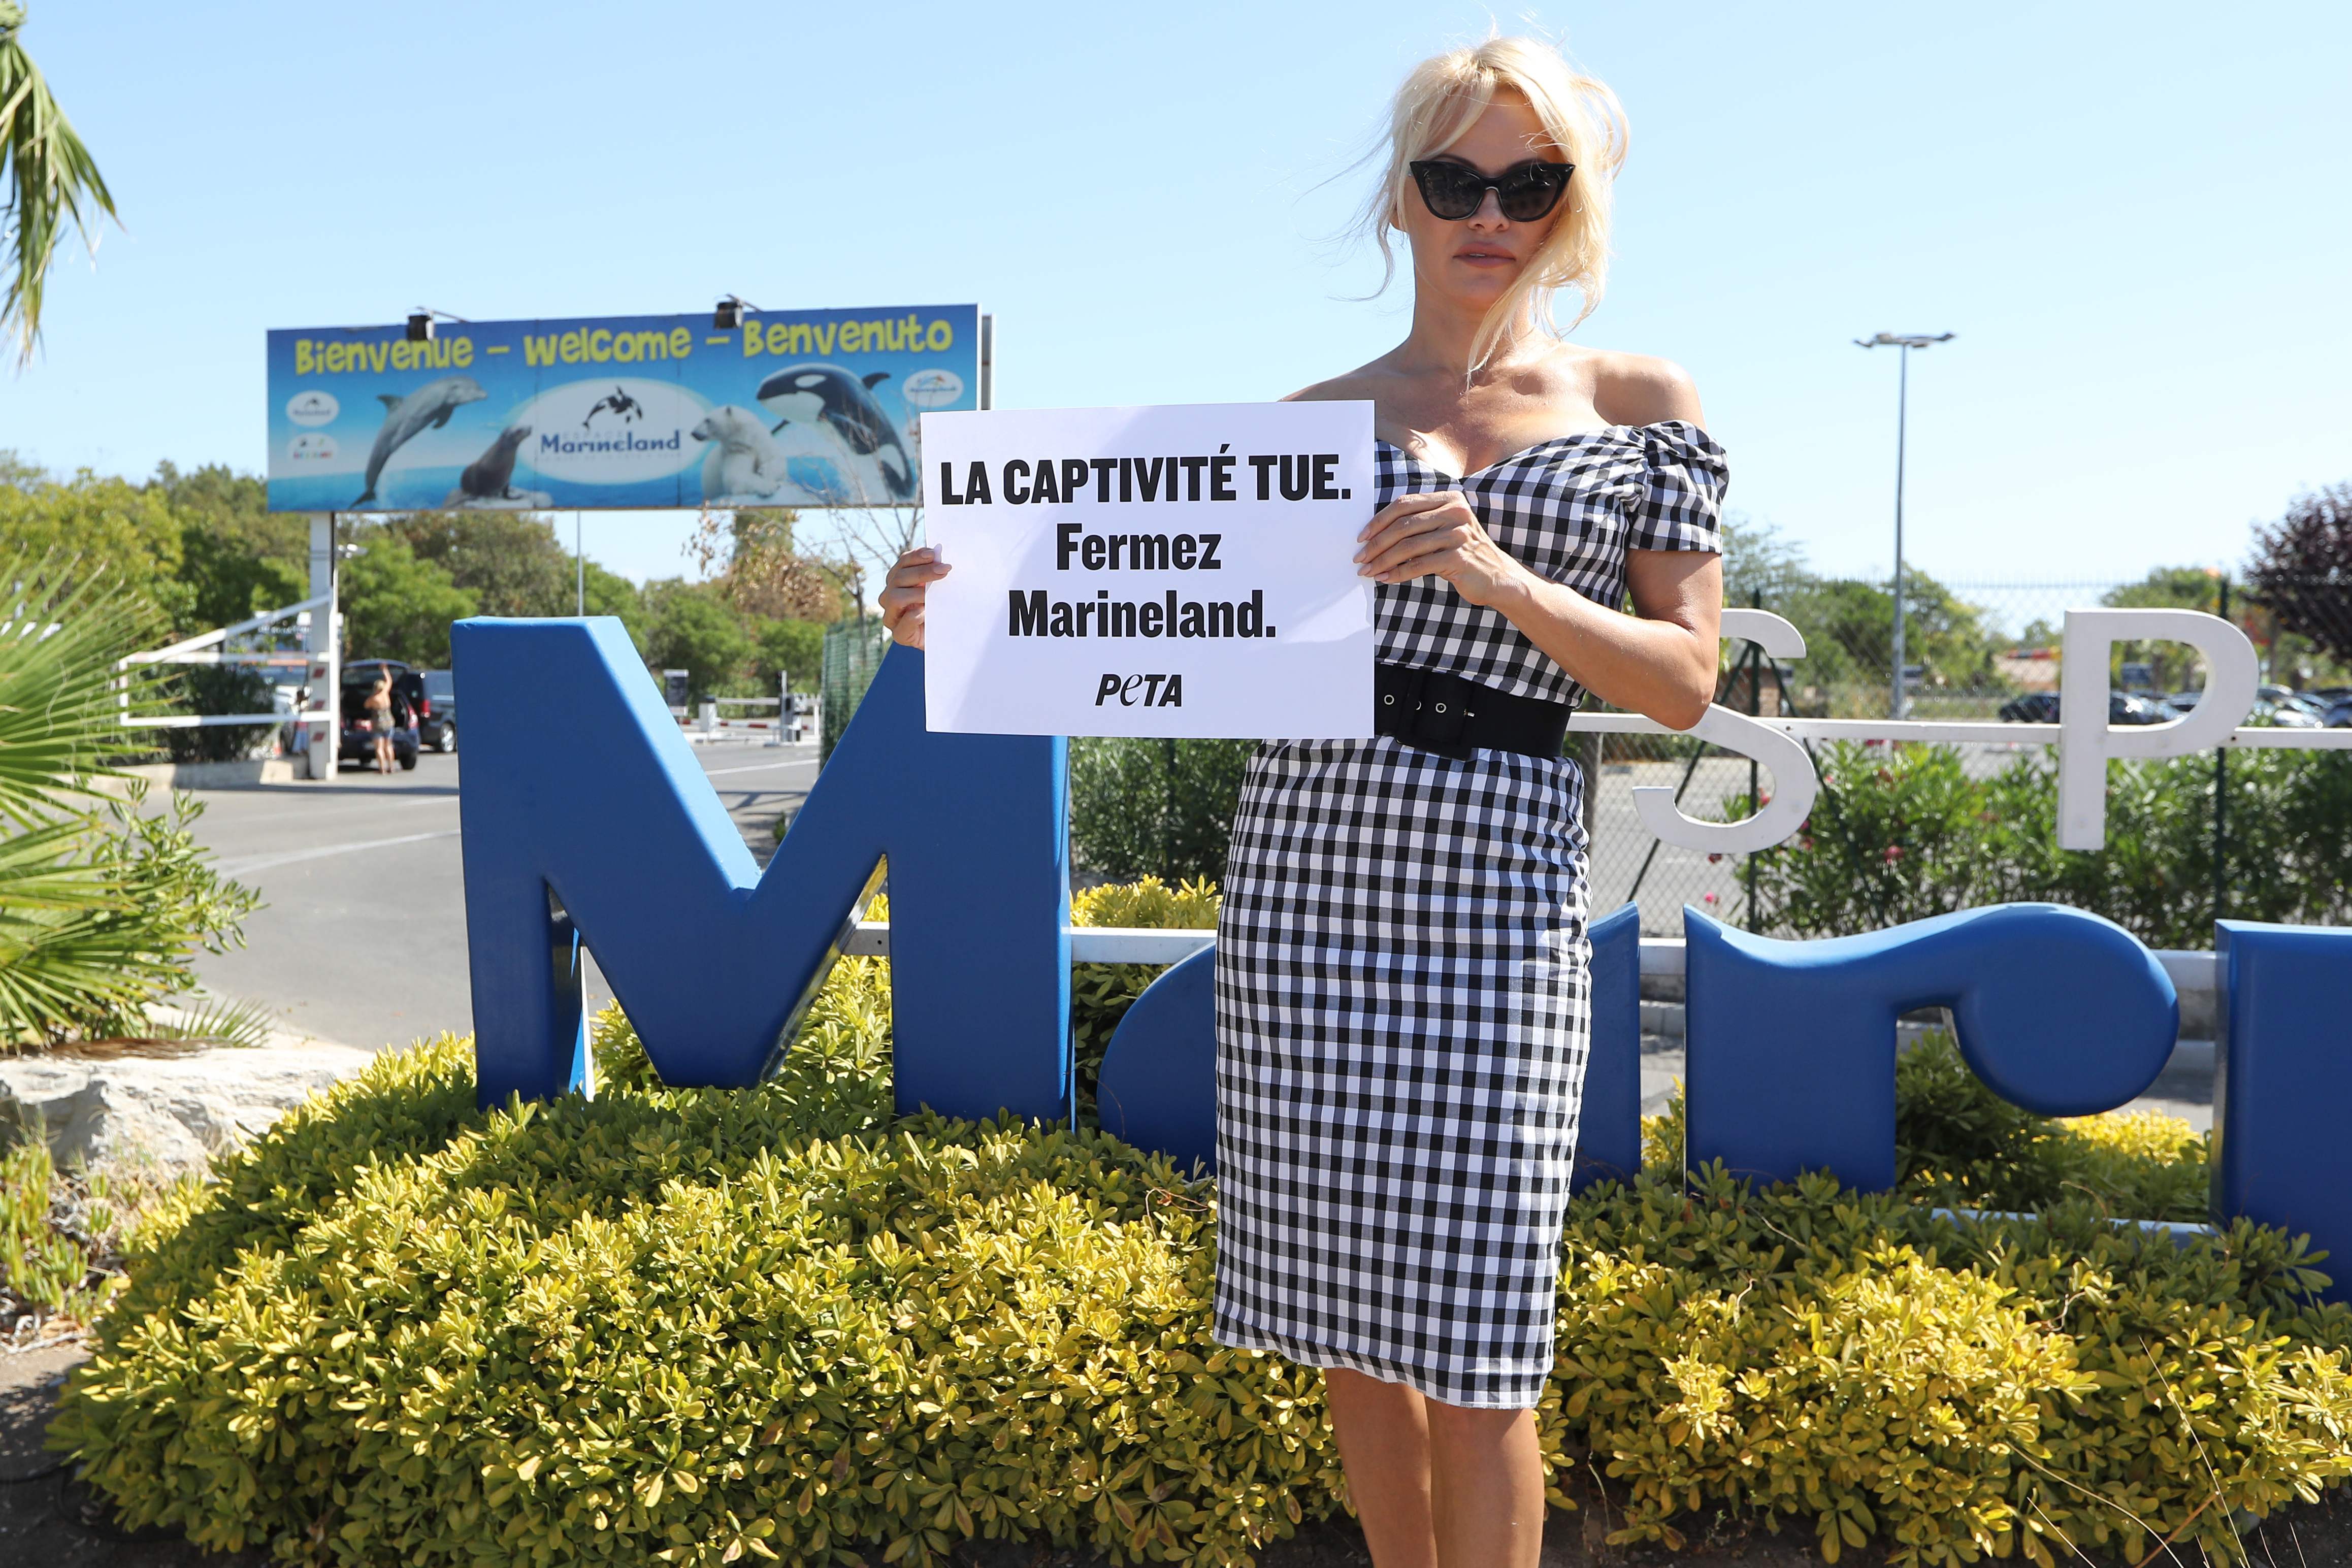 Pamela Anderson protesta en Francia contra cautiverio de animales